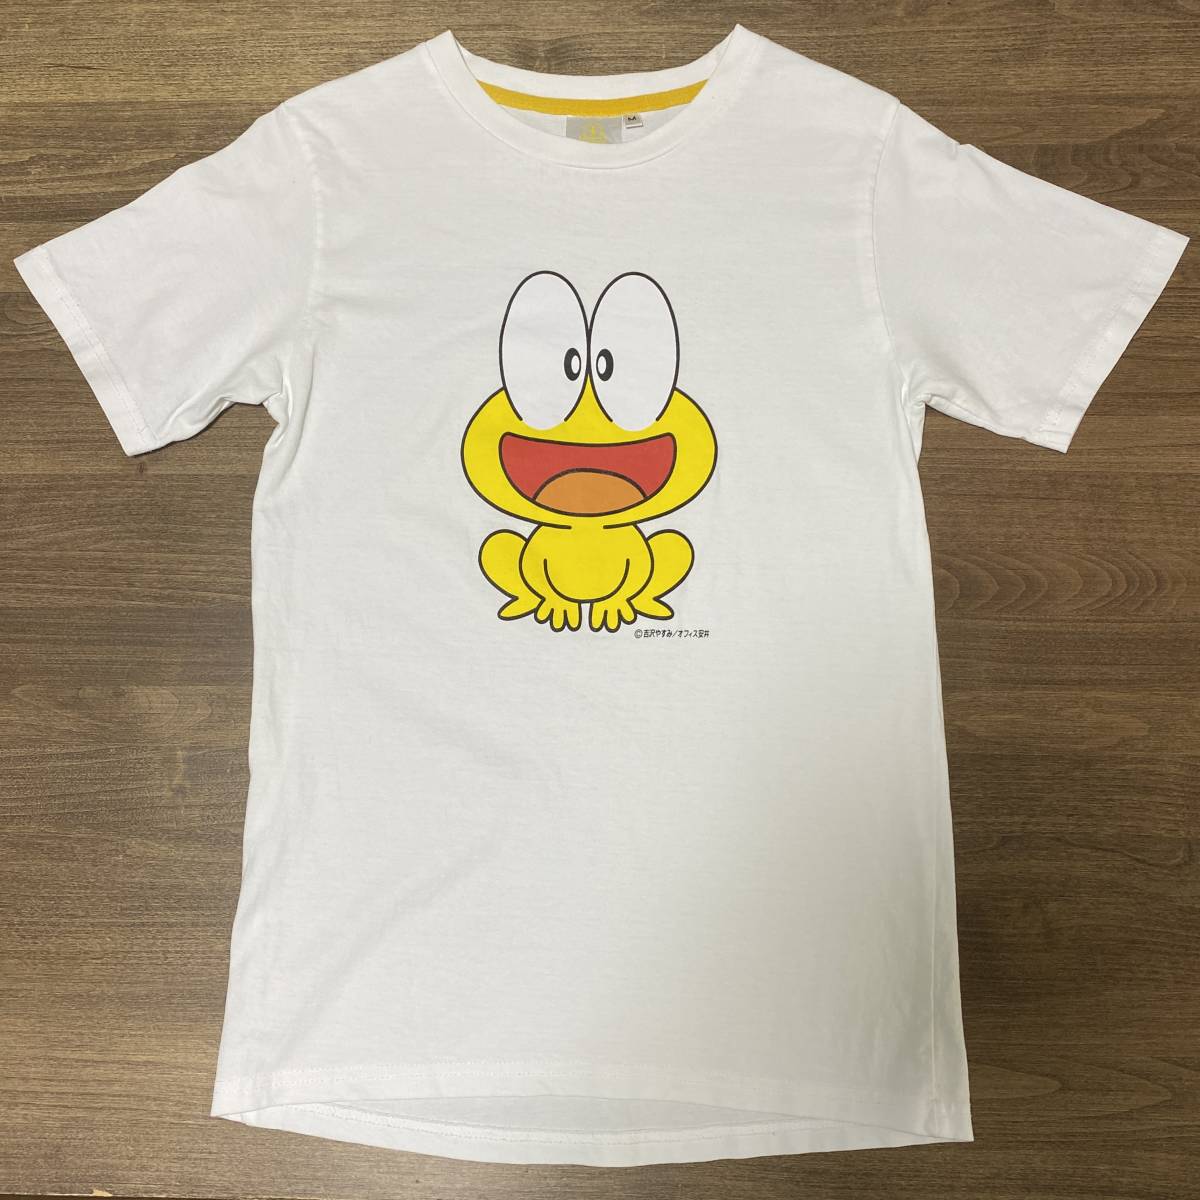 ど根性ガエル Tシャツ (The Gutsy Frog T-shirt)_画像1